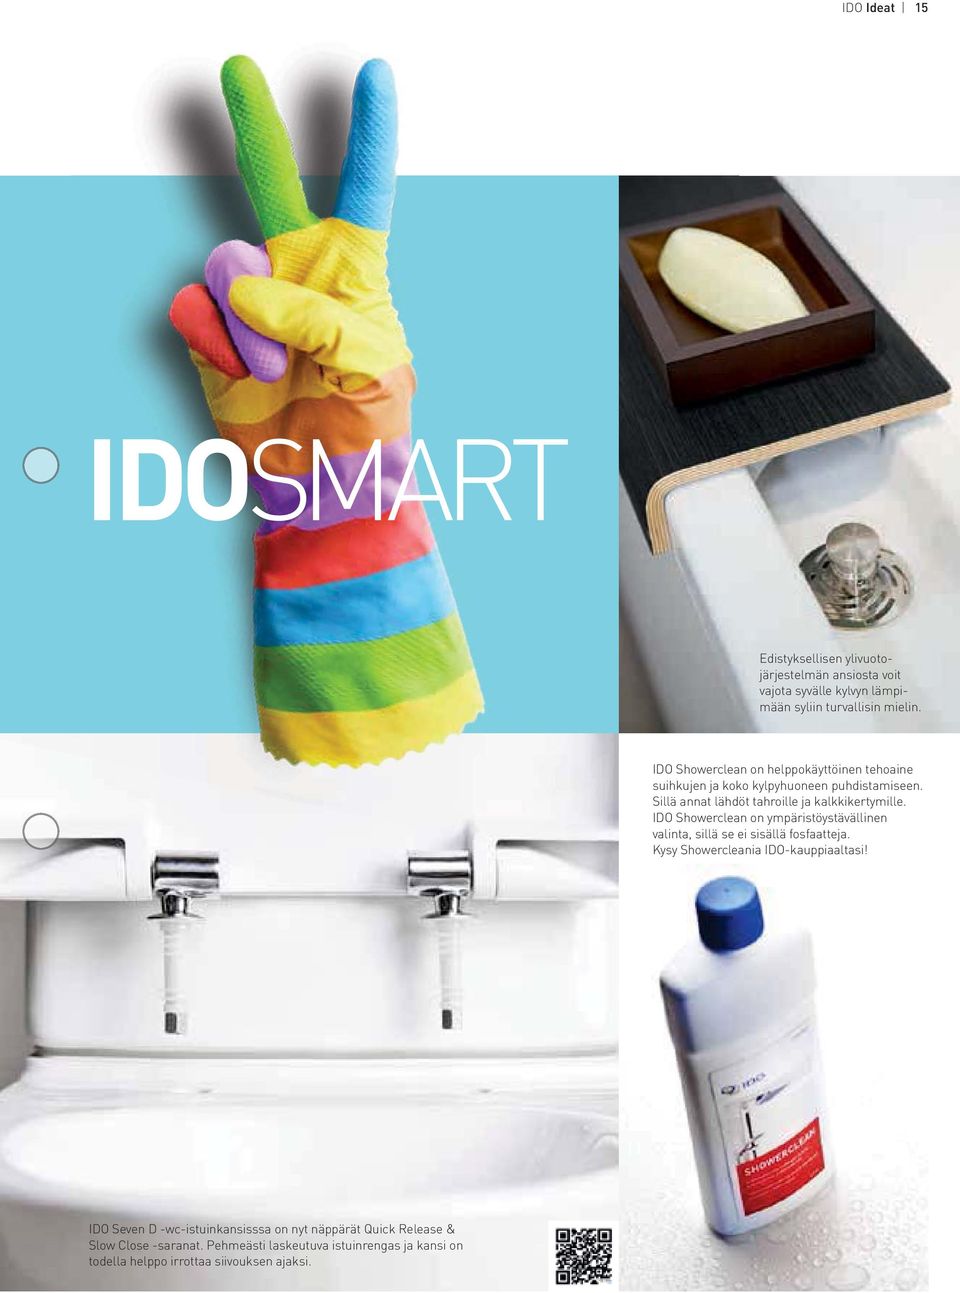 IDO Showerclean on ympäristöystävällinen valinta, sillä se ei sisällä fosfaatteja. Kysy Showercleania IDO-kauppiaaltasi!